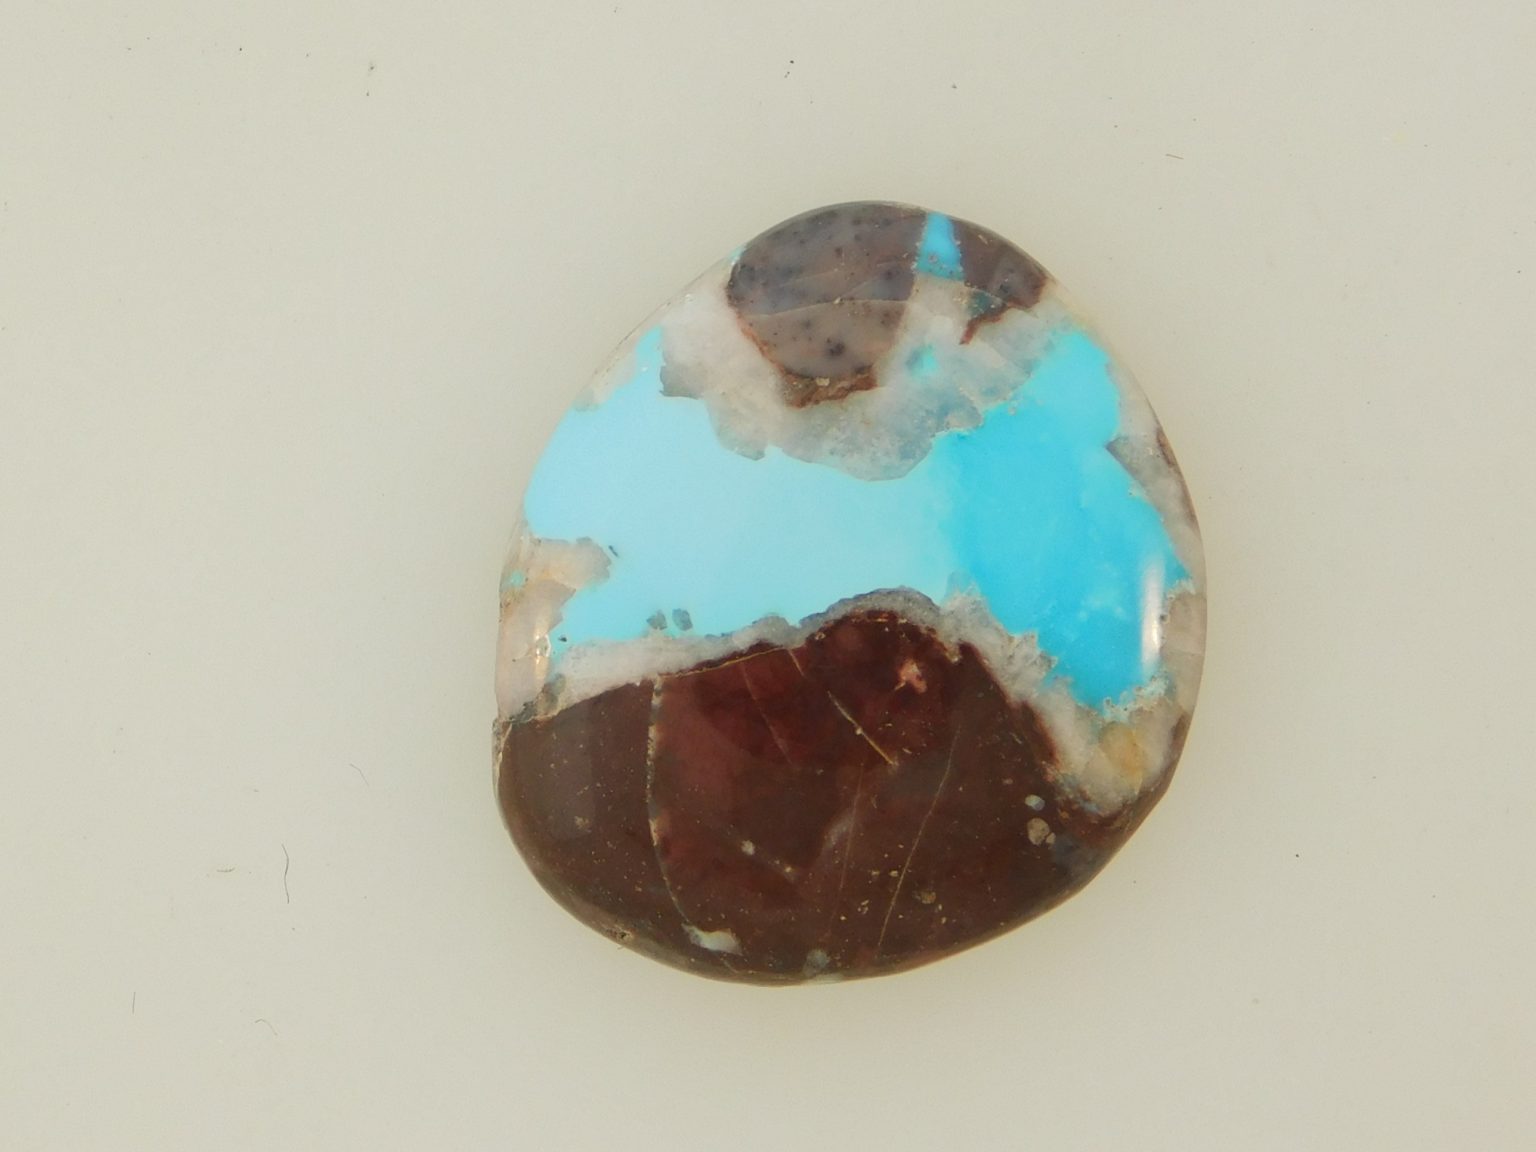 BLUE BISBEE TURQUOISE medium to light blue color in quartz 12 carats